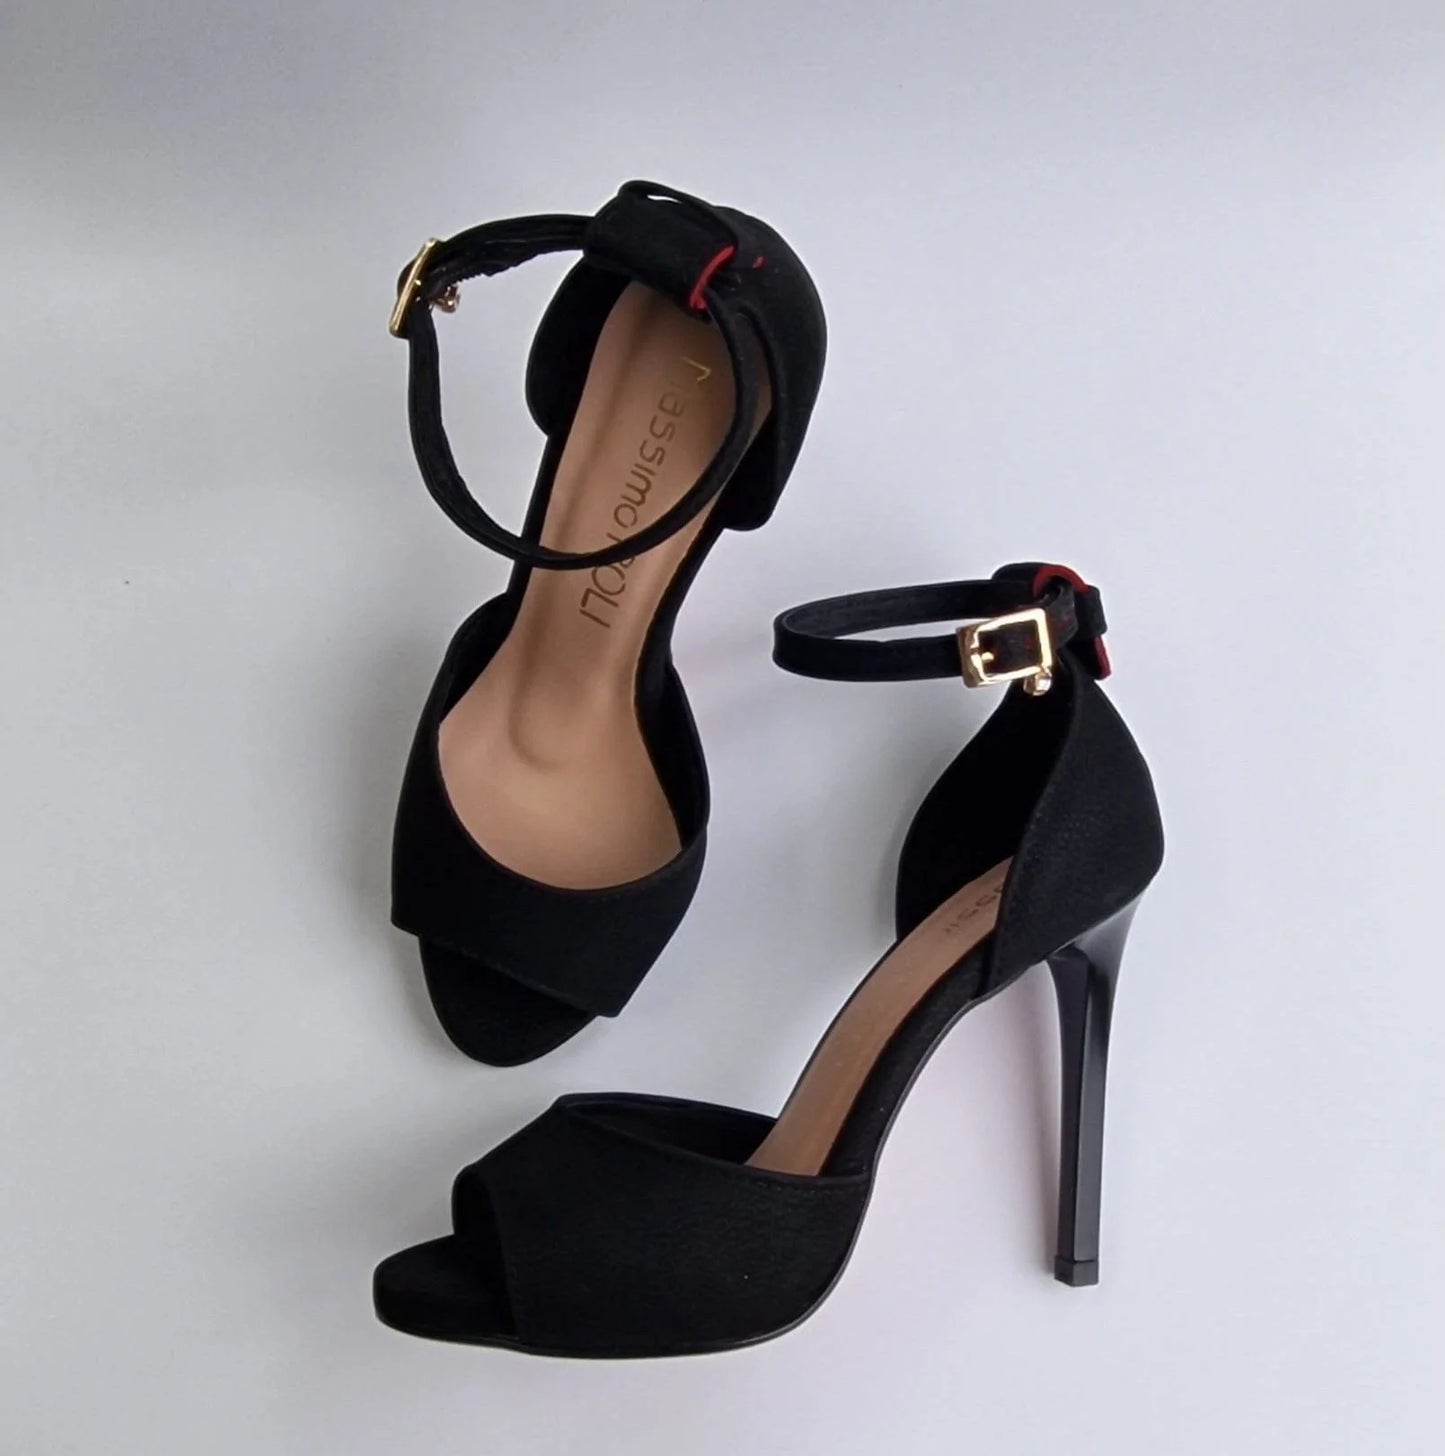 High heel platform sandals in black leather